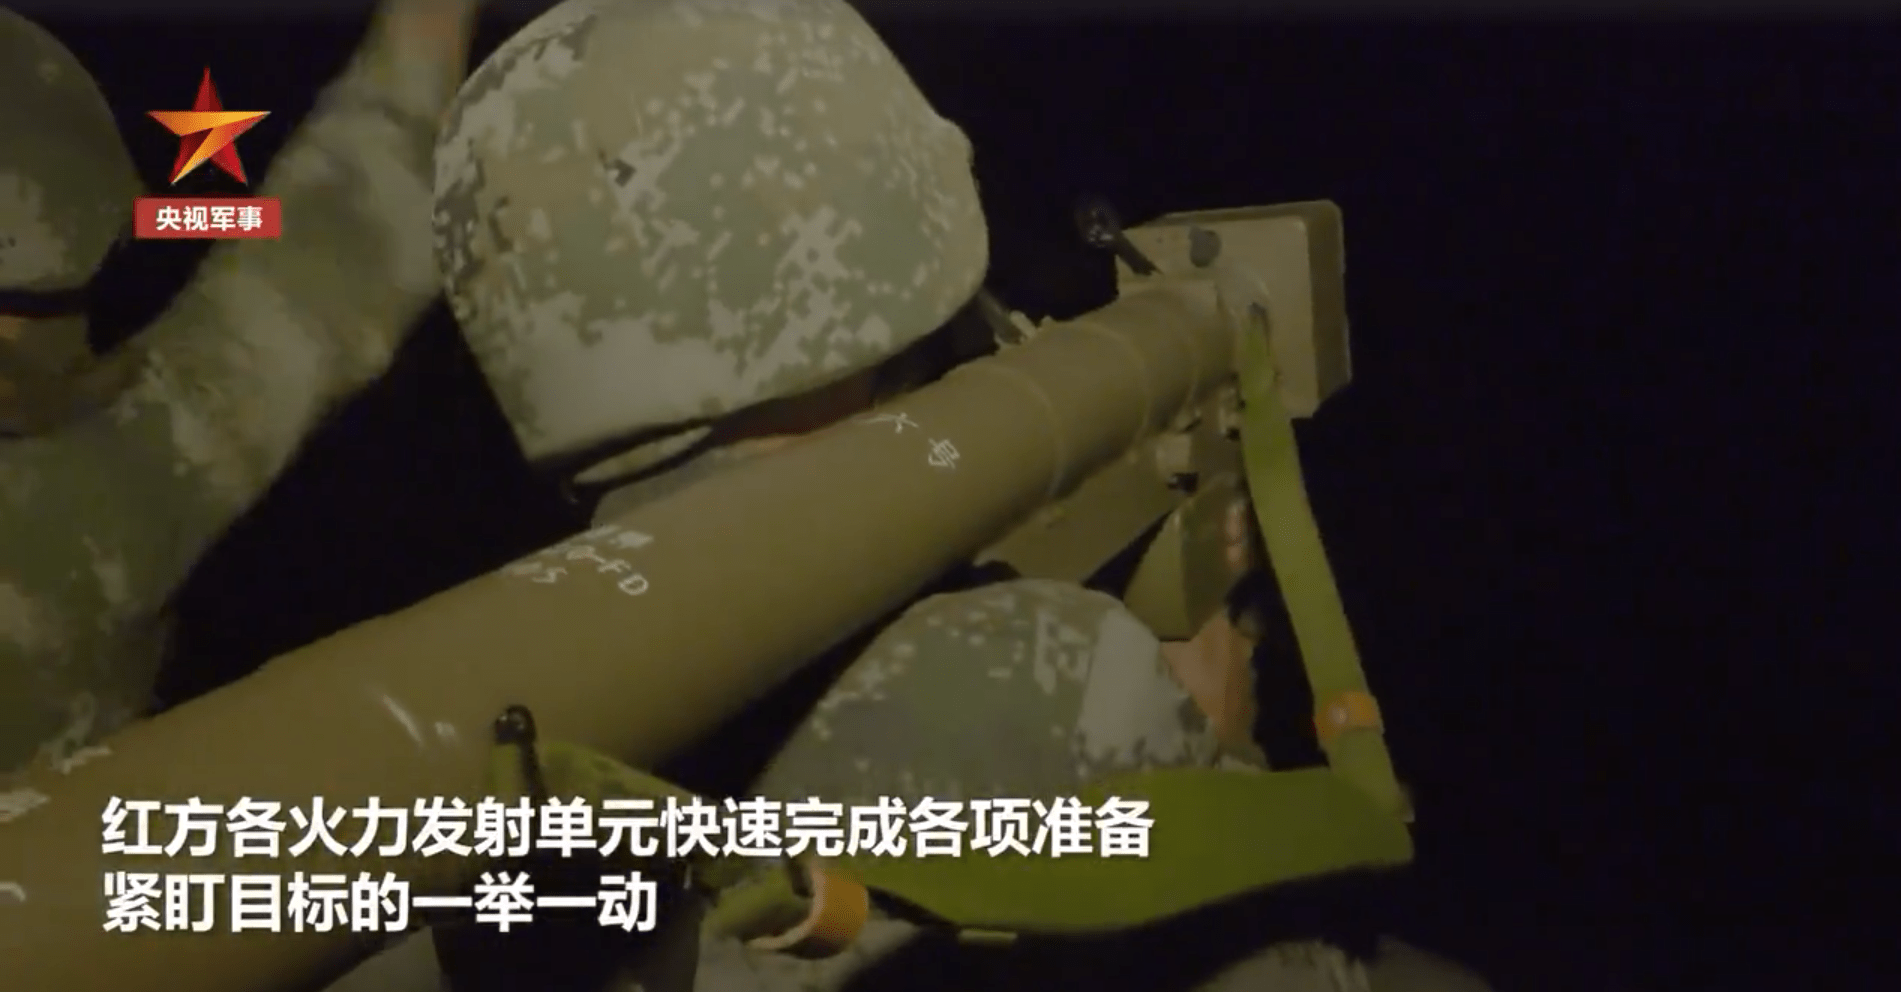 飞弩-6单兵便携式防空导弹,国产版毒刺,